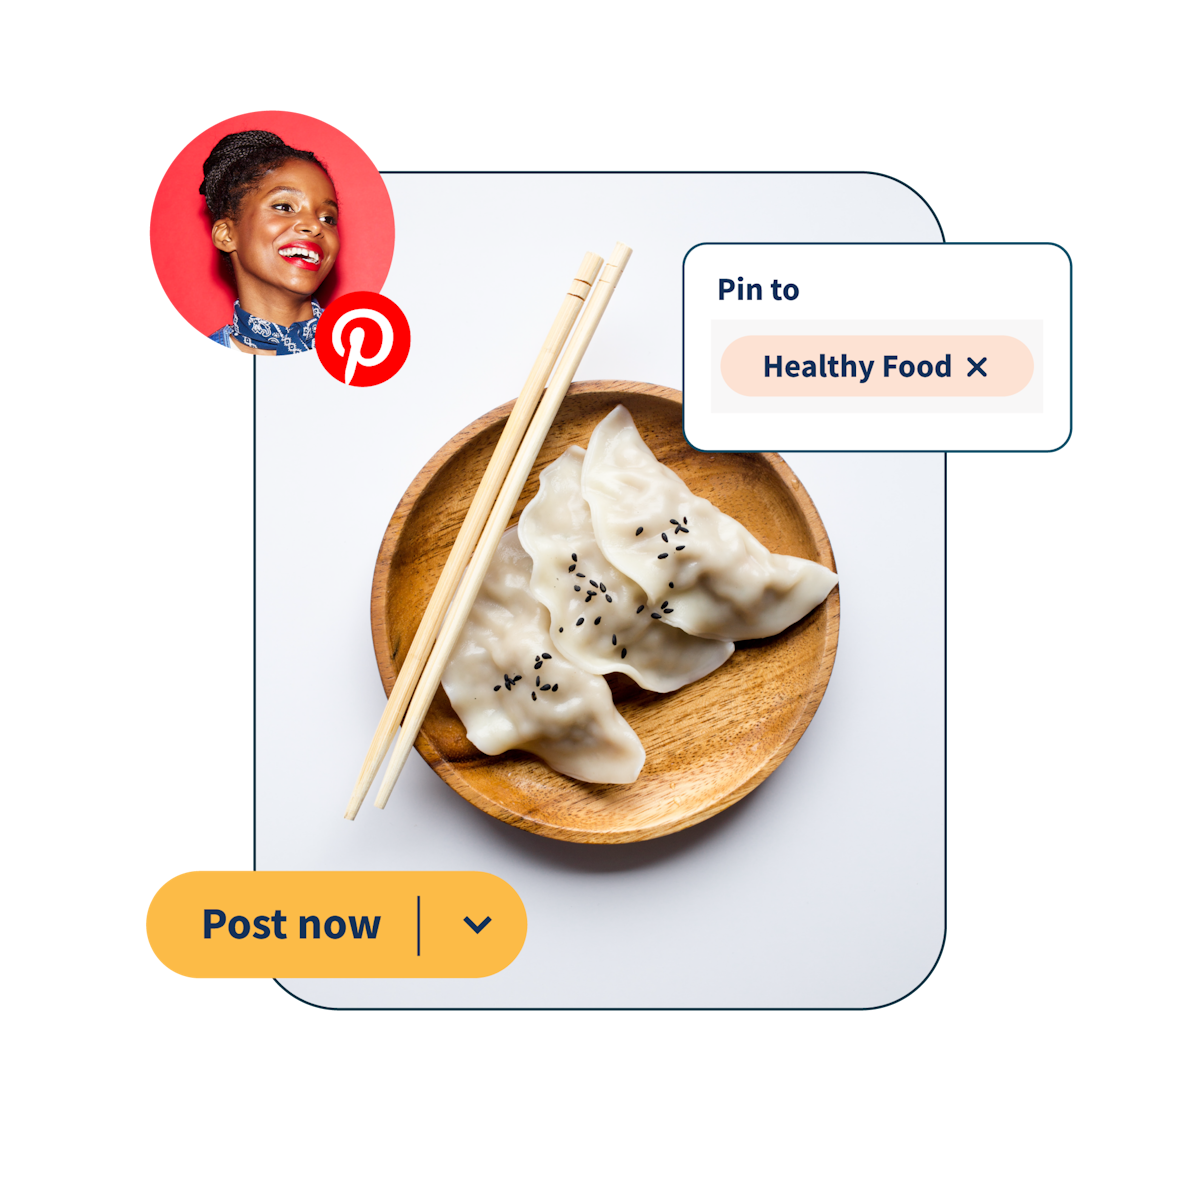 Image de dumplings sur une assiette avec 2 popups : « épinglez une alimentation saine » et « publier maintenant »